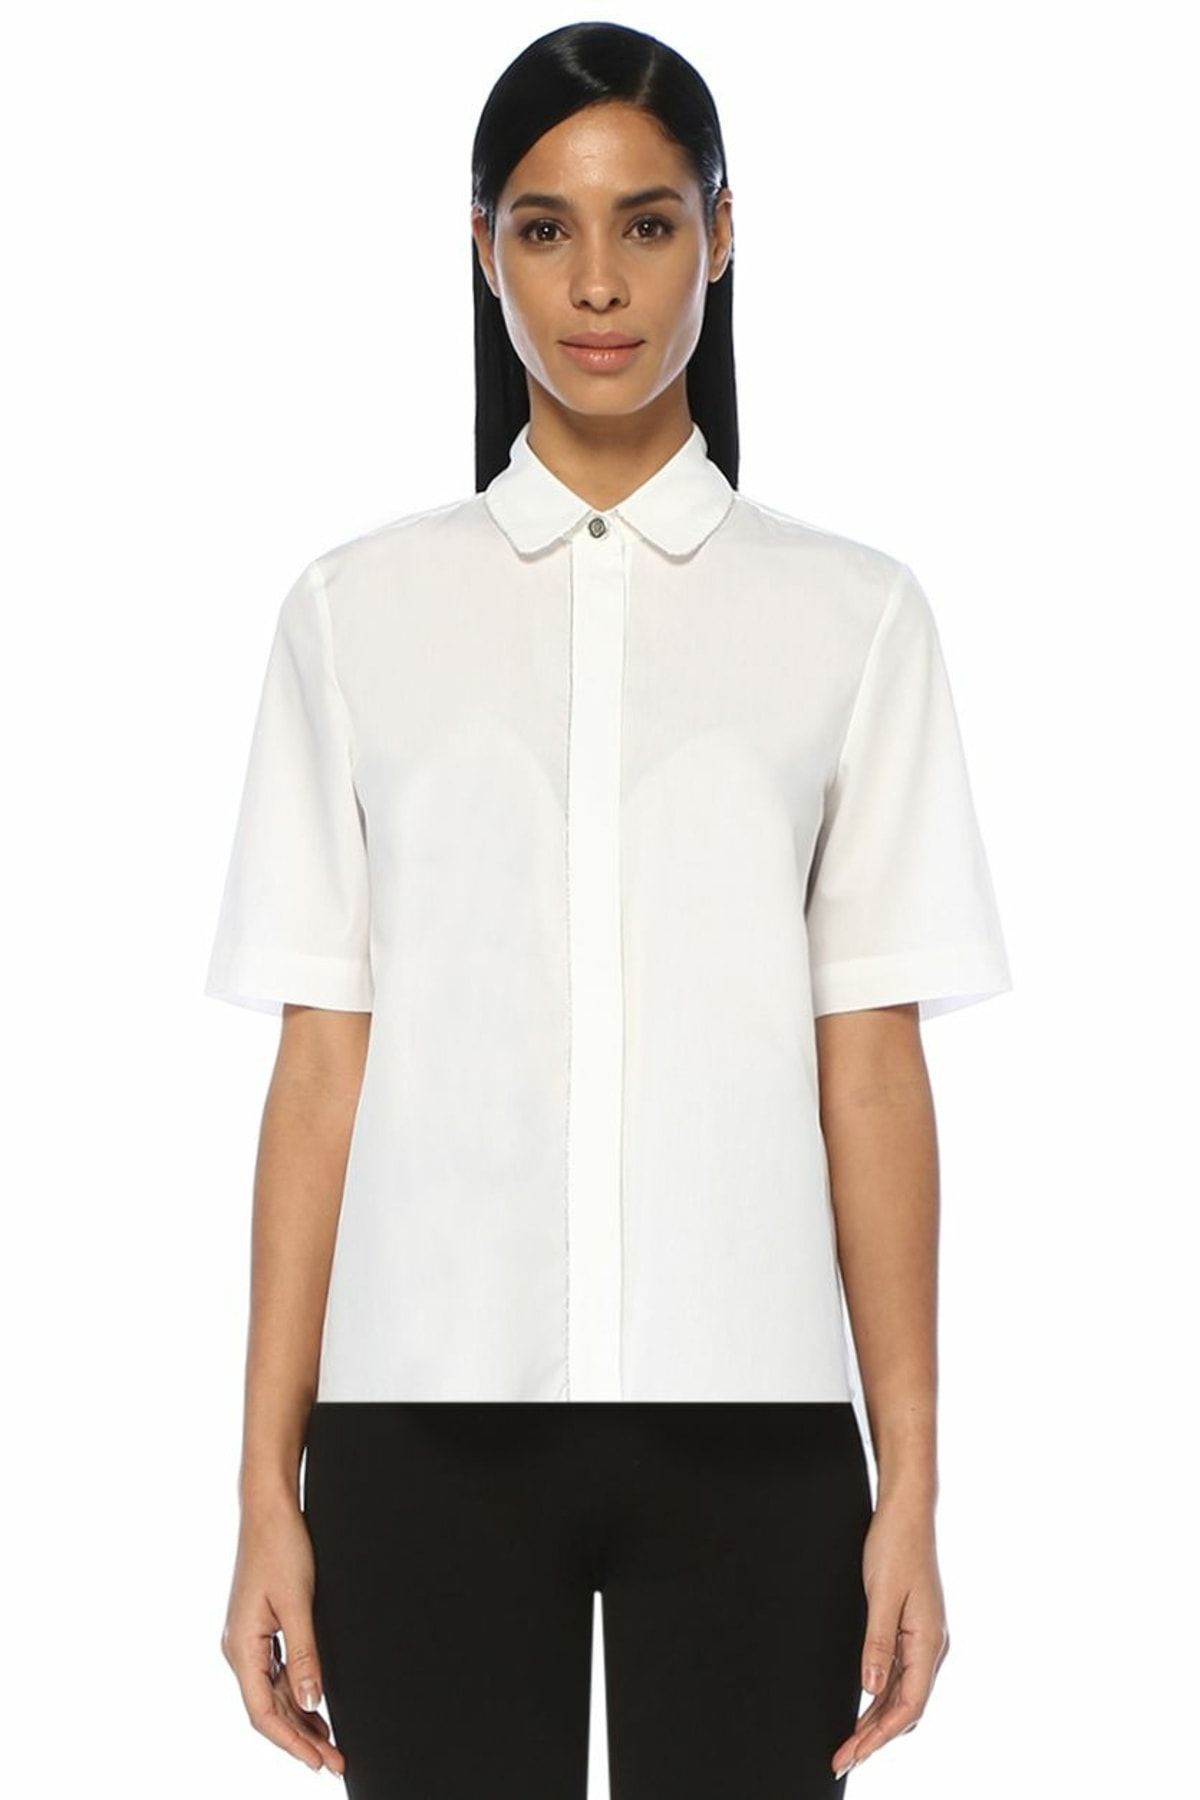 Beymen Club Beyaz Zincir Şerit Detaylı Kısa Kol Gömlek